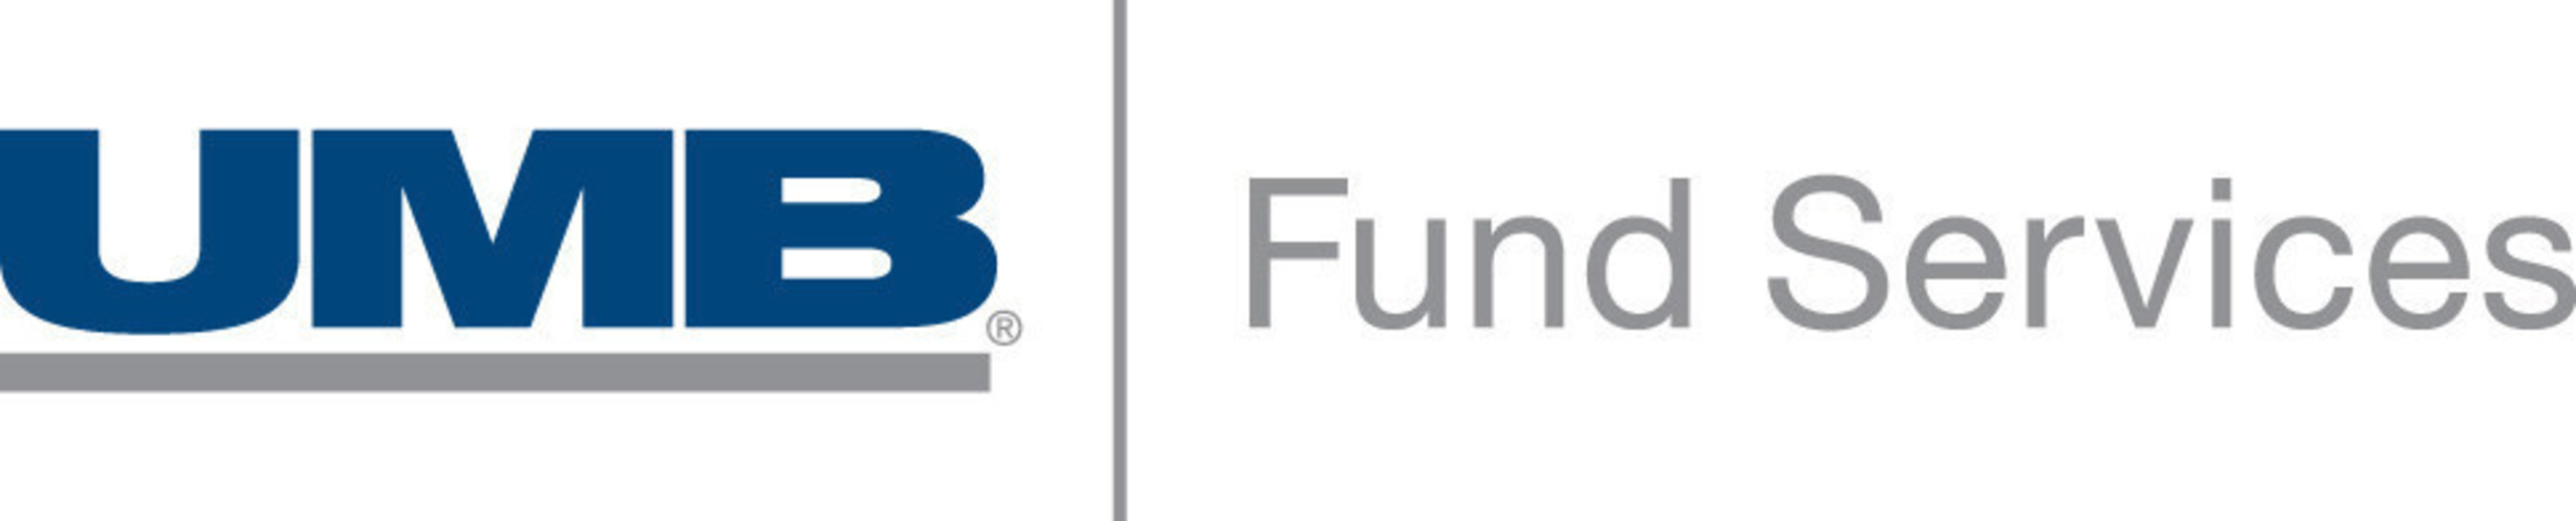 Umb Fund Services (broker-dealer Distribution Business)